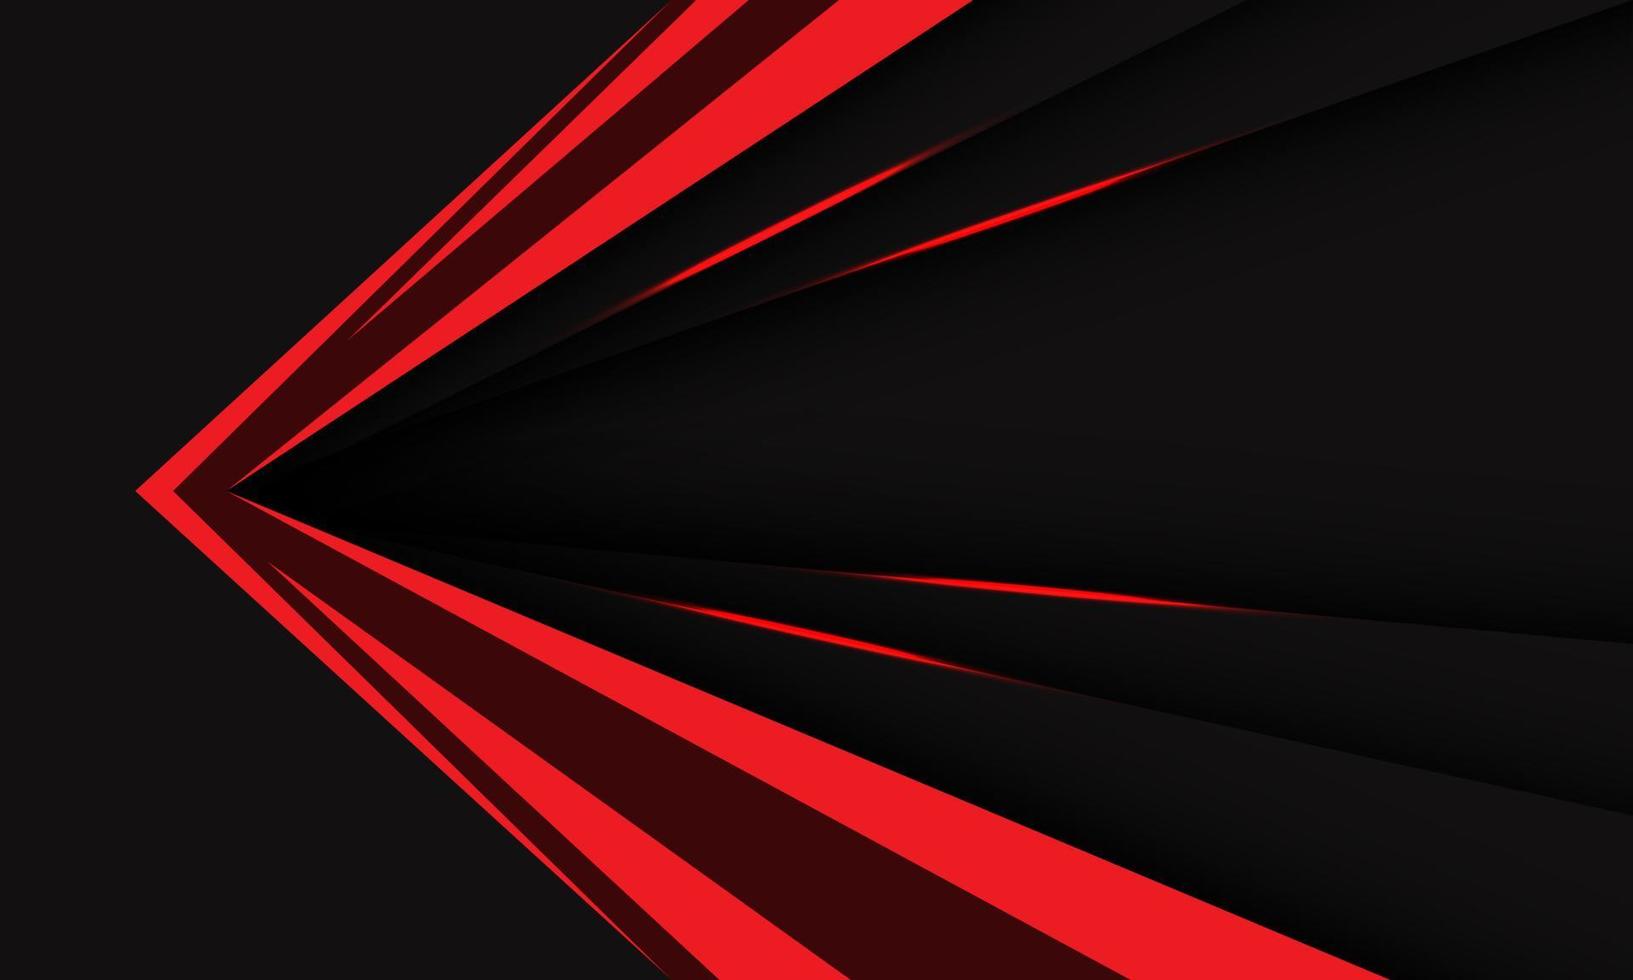 abstracto rojo negro metálico flecha velocidad dirección geométrico diseño moderno tecnología futurista fondo vector